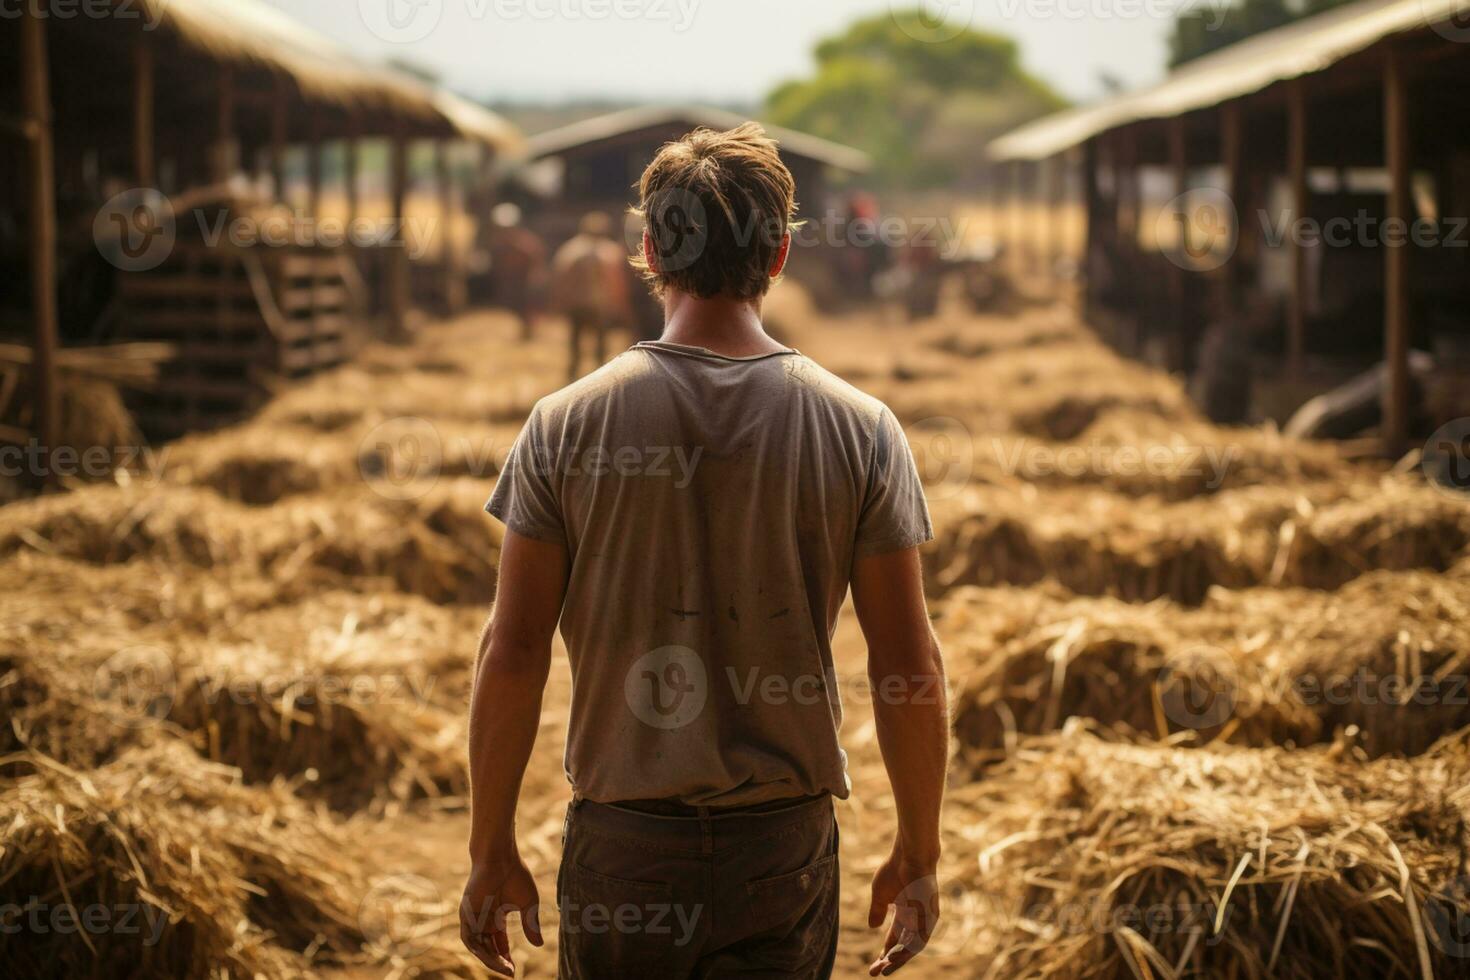 A farmer from behind at a barnyard handling domestic animal photo